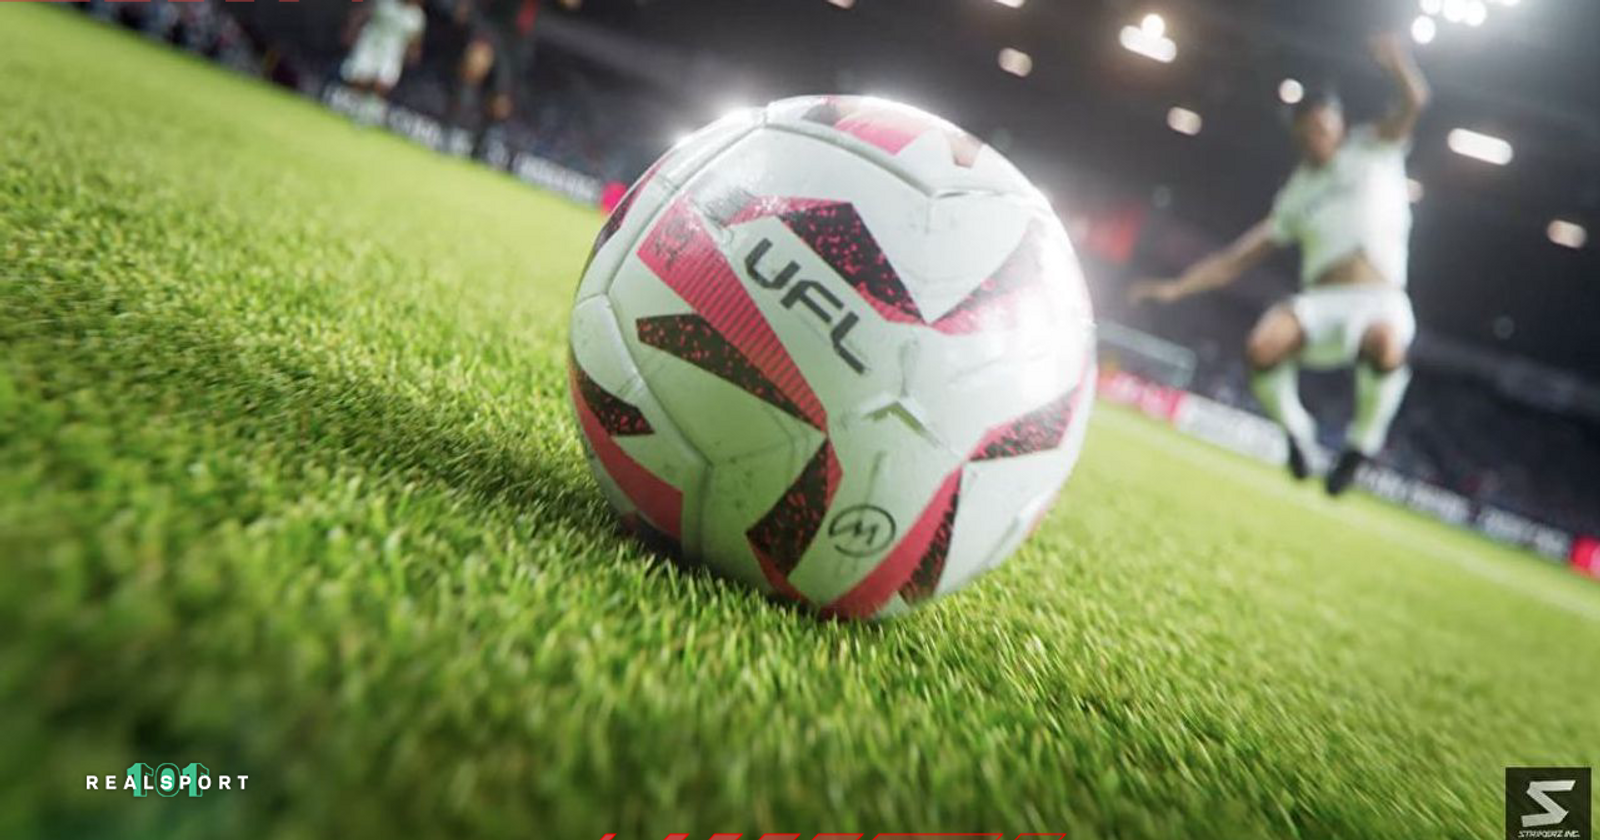 UFL - United Football League